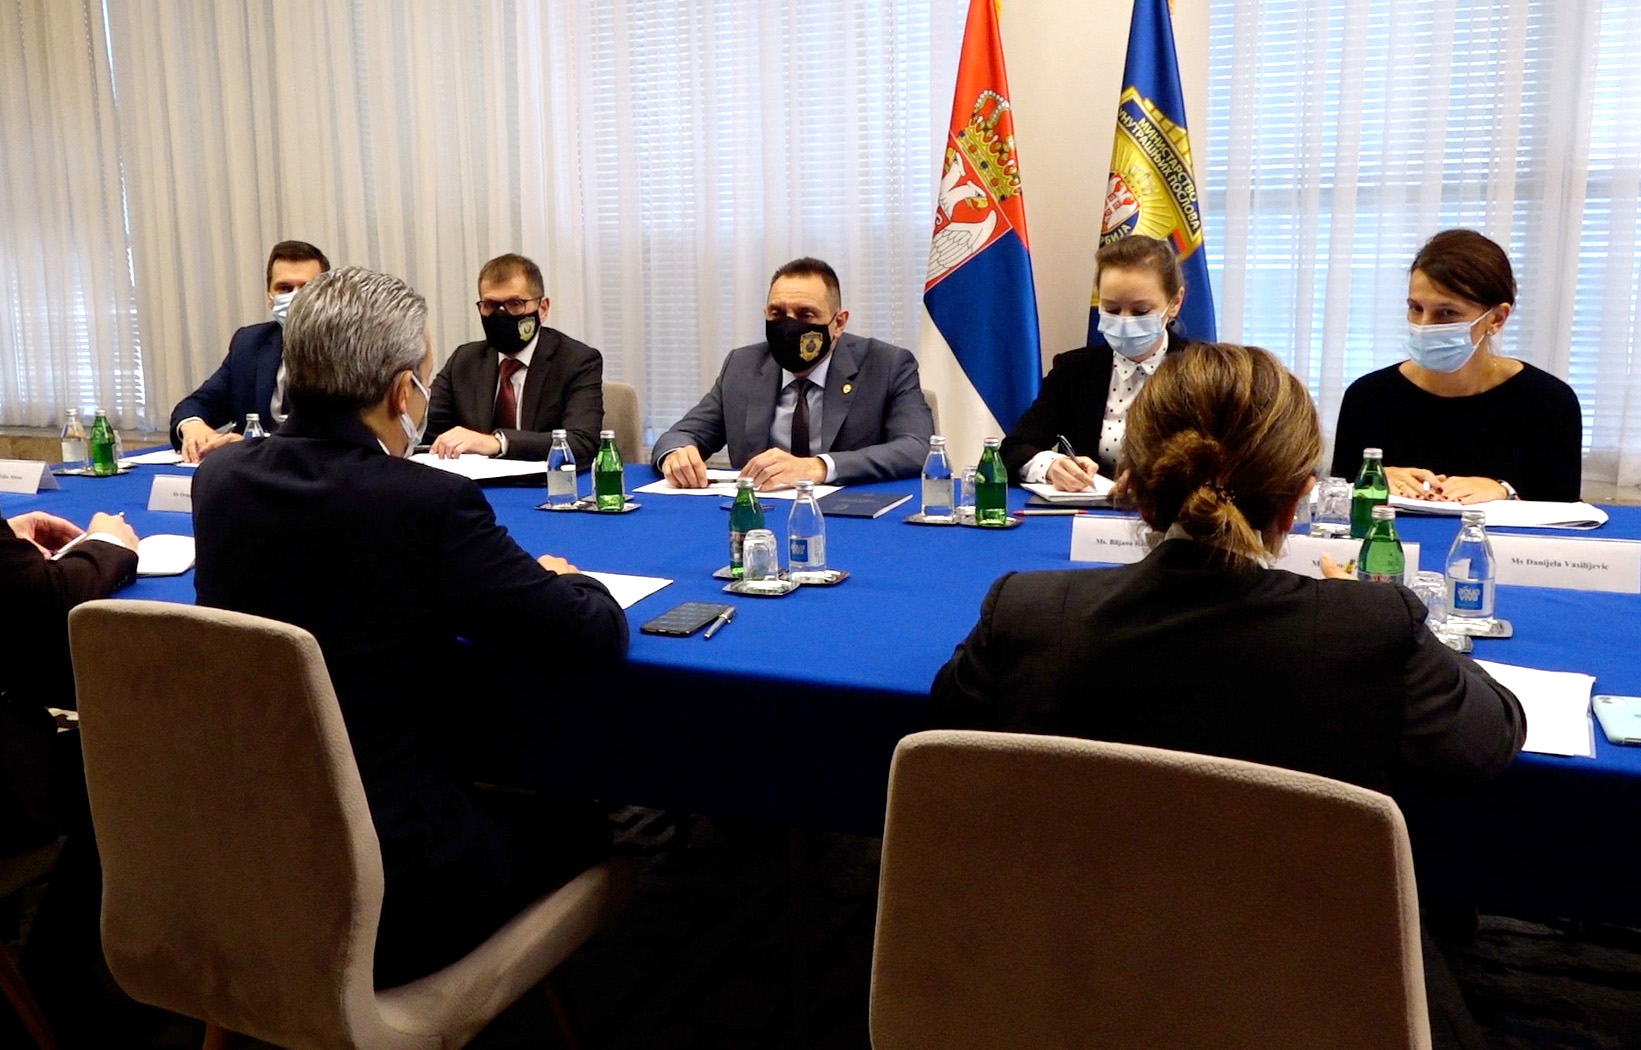 Ministar Vulin razgovarao je danas sa novoimenovanim ambasadorom Republike Turske u Beogradu Hamijem Aksojem